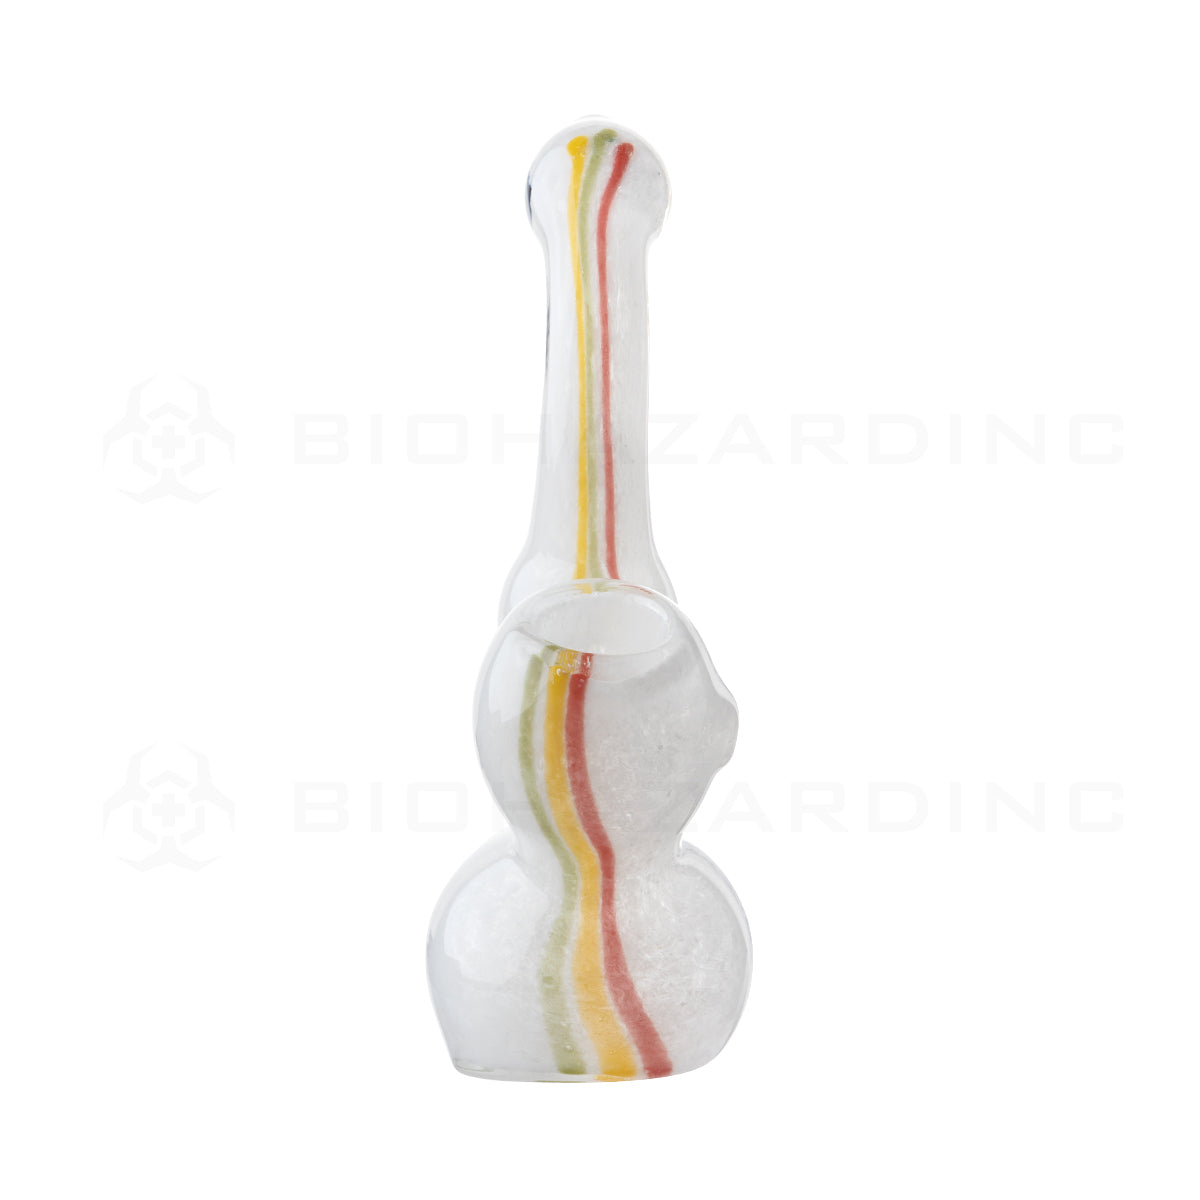 Bubbler | Frit Bubbler w/ Stripes | 5" - Assorted Colors Glass Bubbler Biohazard Inc   